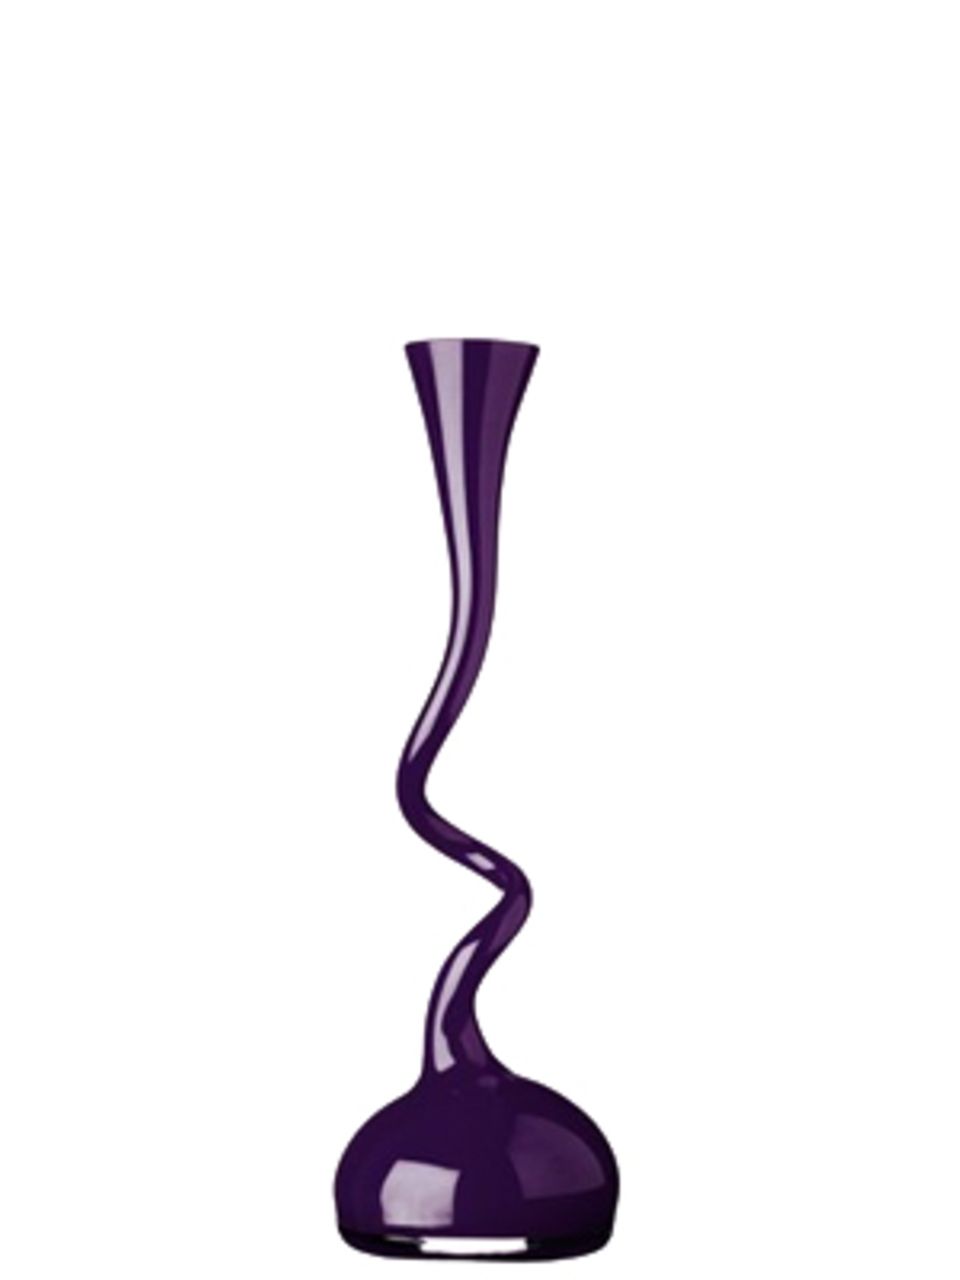 Der absolute Hingucker ist diese formschöne Design-Vase von Design3000. Um 40 Euro, in verschiedenen Größen erhältlich.